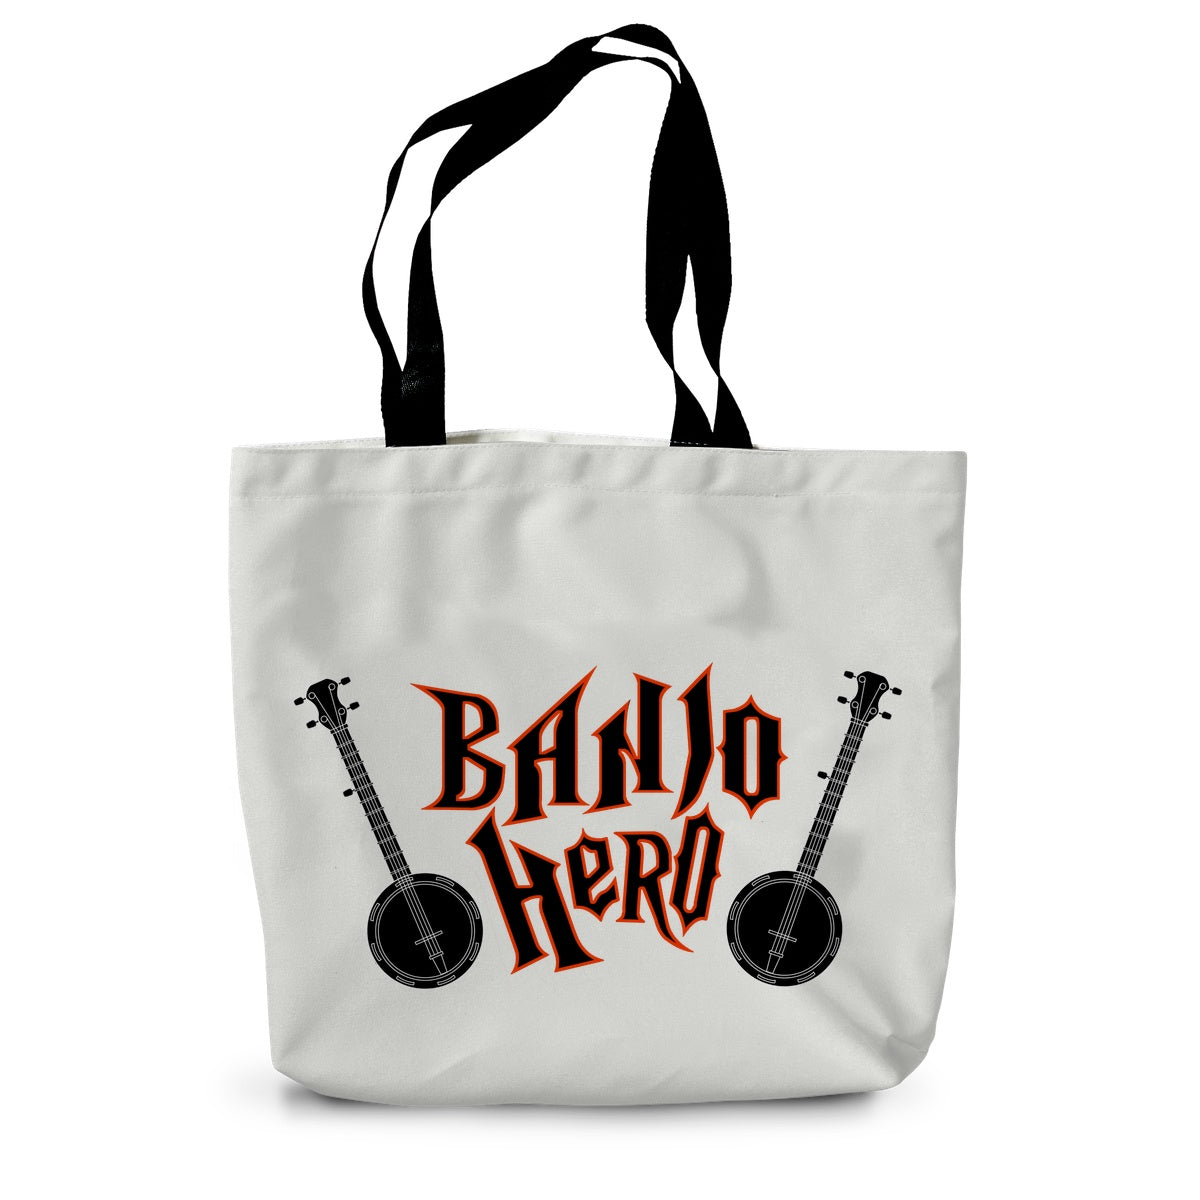 Banjo Hero Canvas Tote Bag